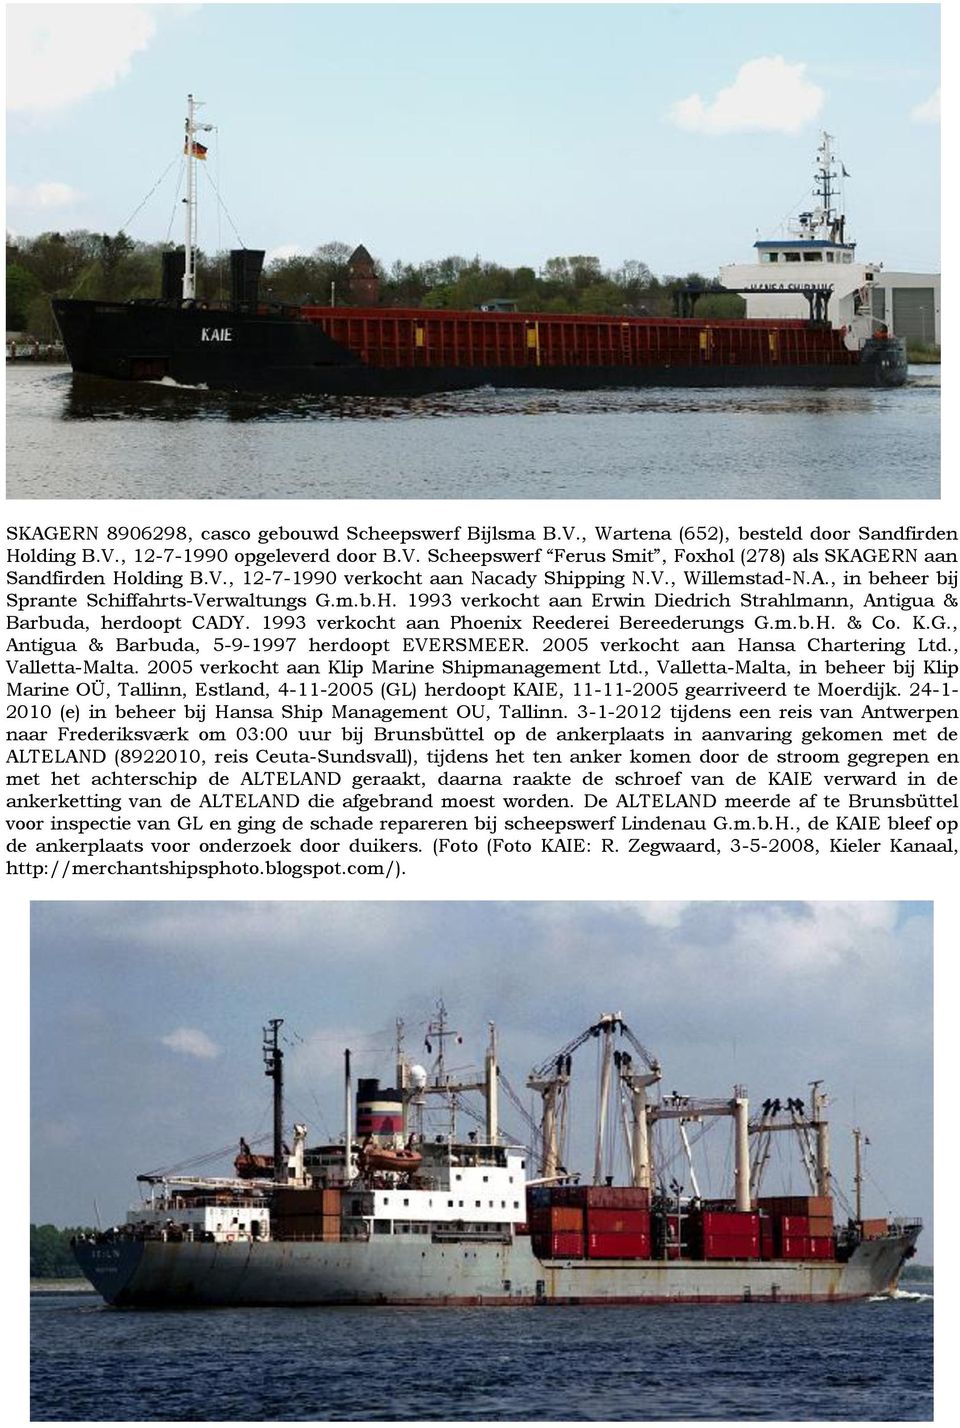 1993 verkocht aan Phoenix Reederei Bereederungs G.m.b.H. & Co. K.G., Antigua & Barbuda, 5-9-1997 herdoopt EVERSMEER. 2005 verkocht aan Hansa Chartering Ltd., Valletta-Malta.